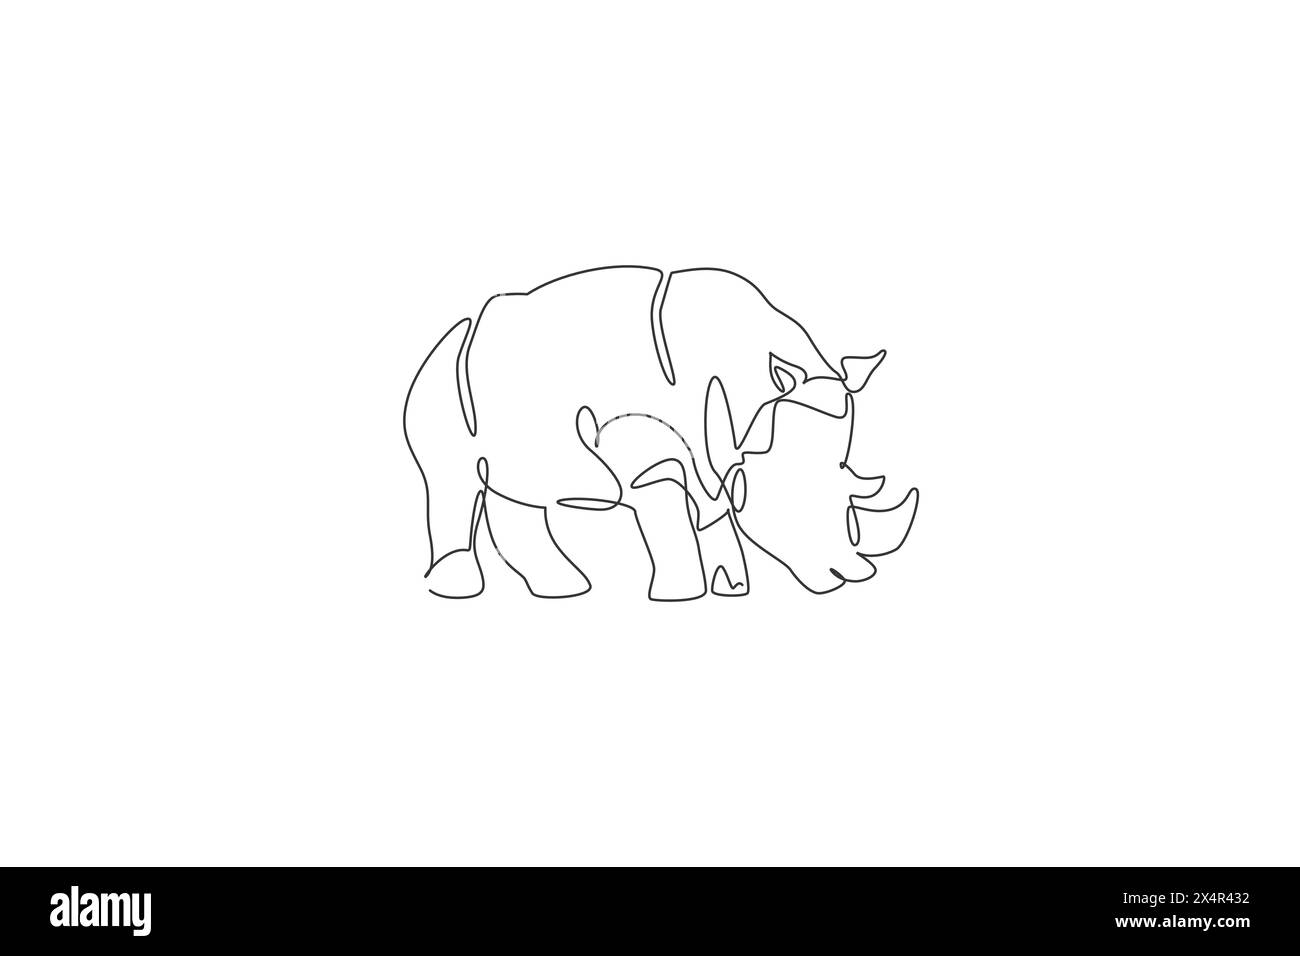 Un dessin simple ligne de l'illustration vectorielle graphique de rhinocéros africain géant. Conservation des espèces protégées dans le parc national. Concept Safari zoo. Mod Illustration de Vecteur